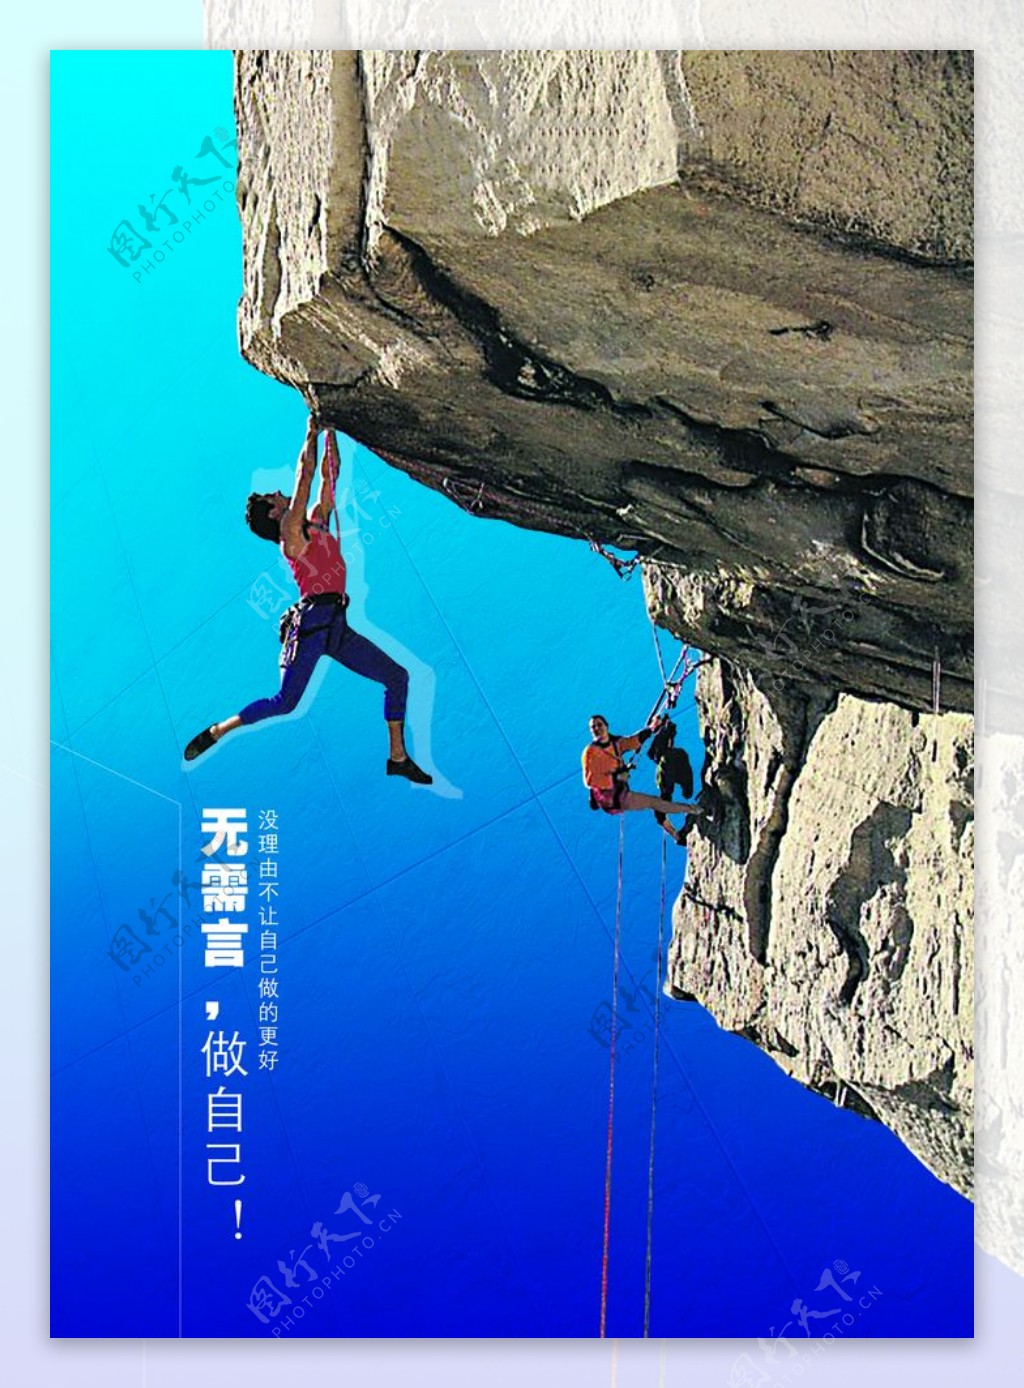 励志攀登山崖创意文案宣传海报